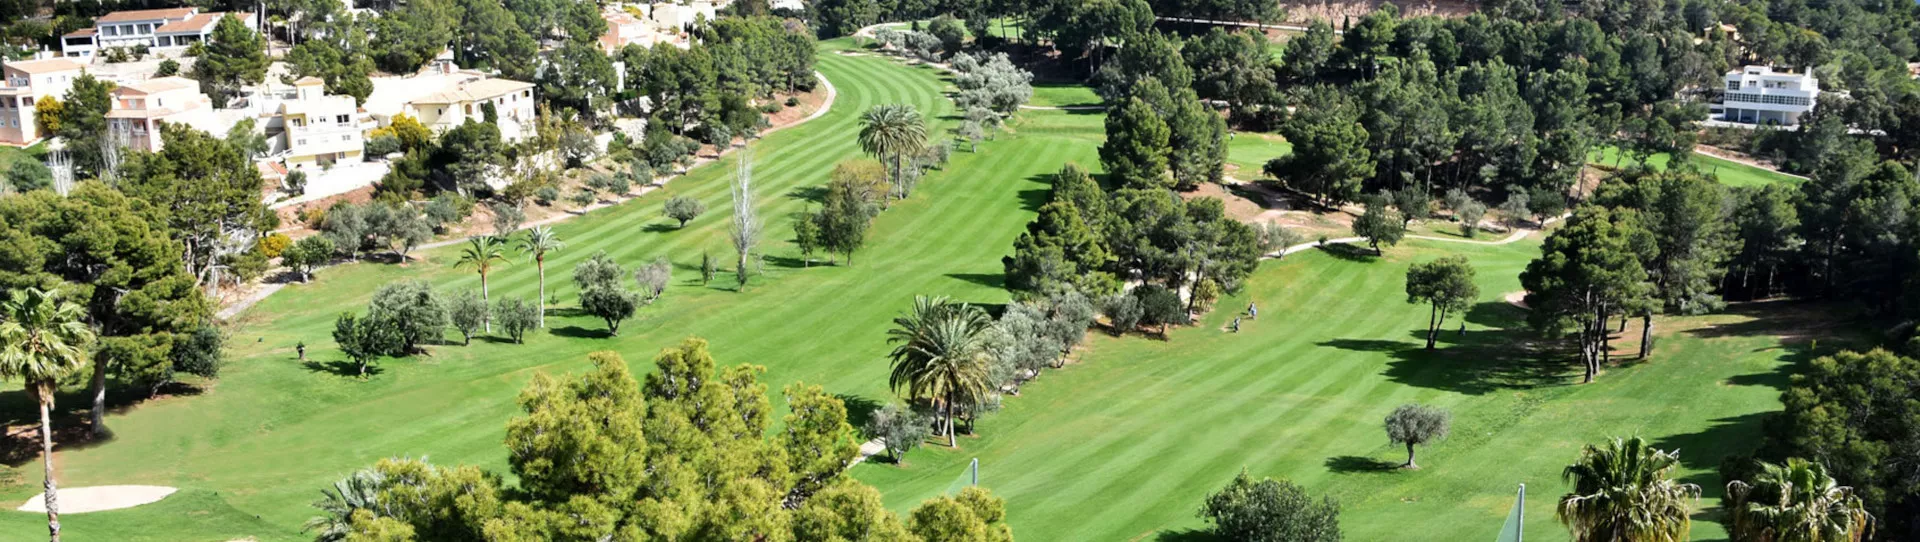 Spain golf courses - Altea Golf Club - Photo 1